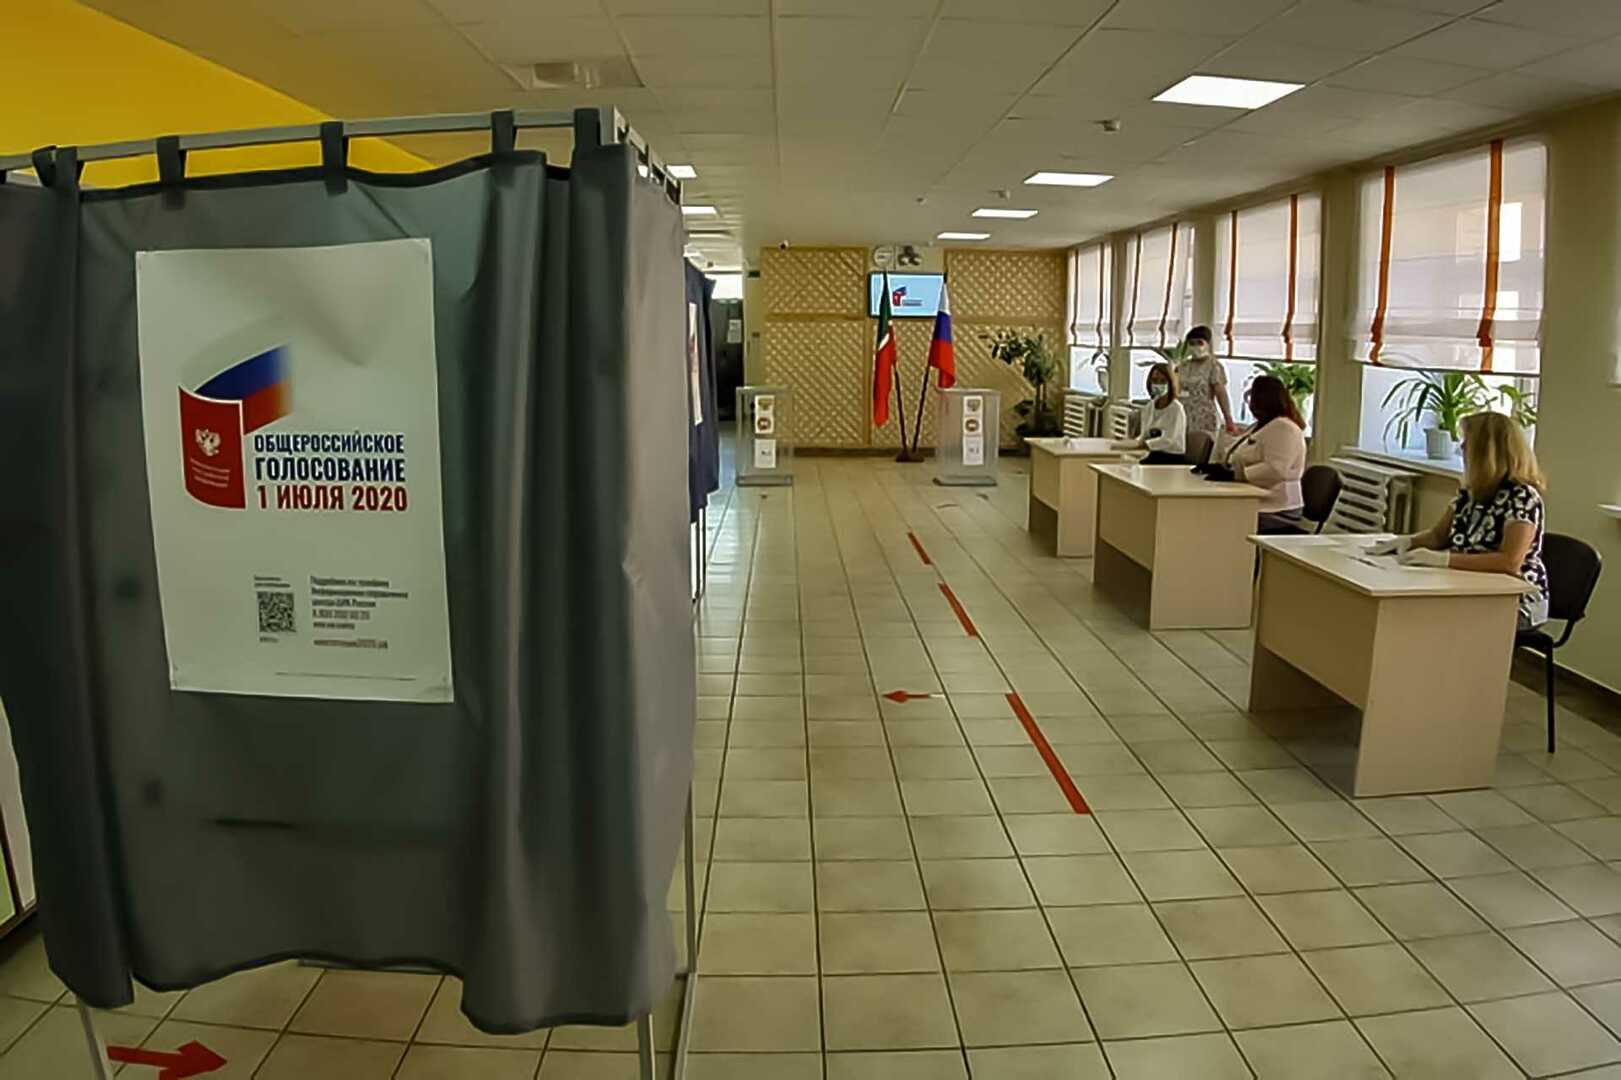 Фото с участка голосования. Видеонаблюдение на избирательном участке. Камеры на избирательных участках. Участок для голосования. Видеонаблюдение на участках для голосования.